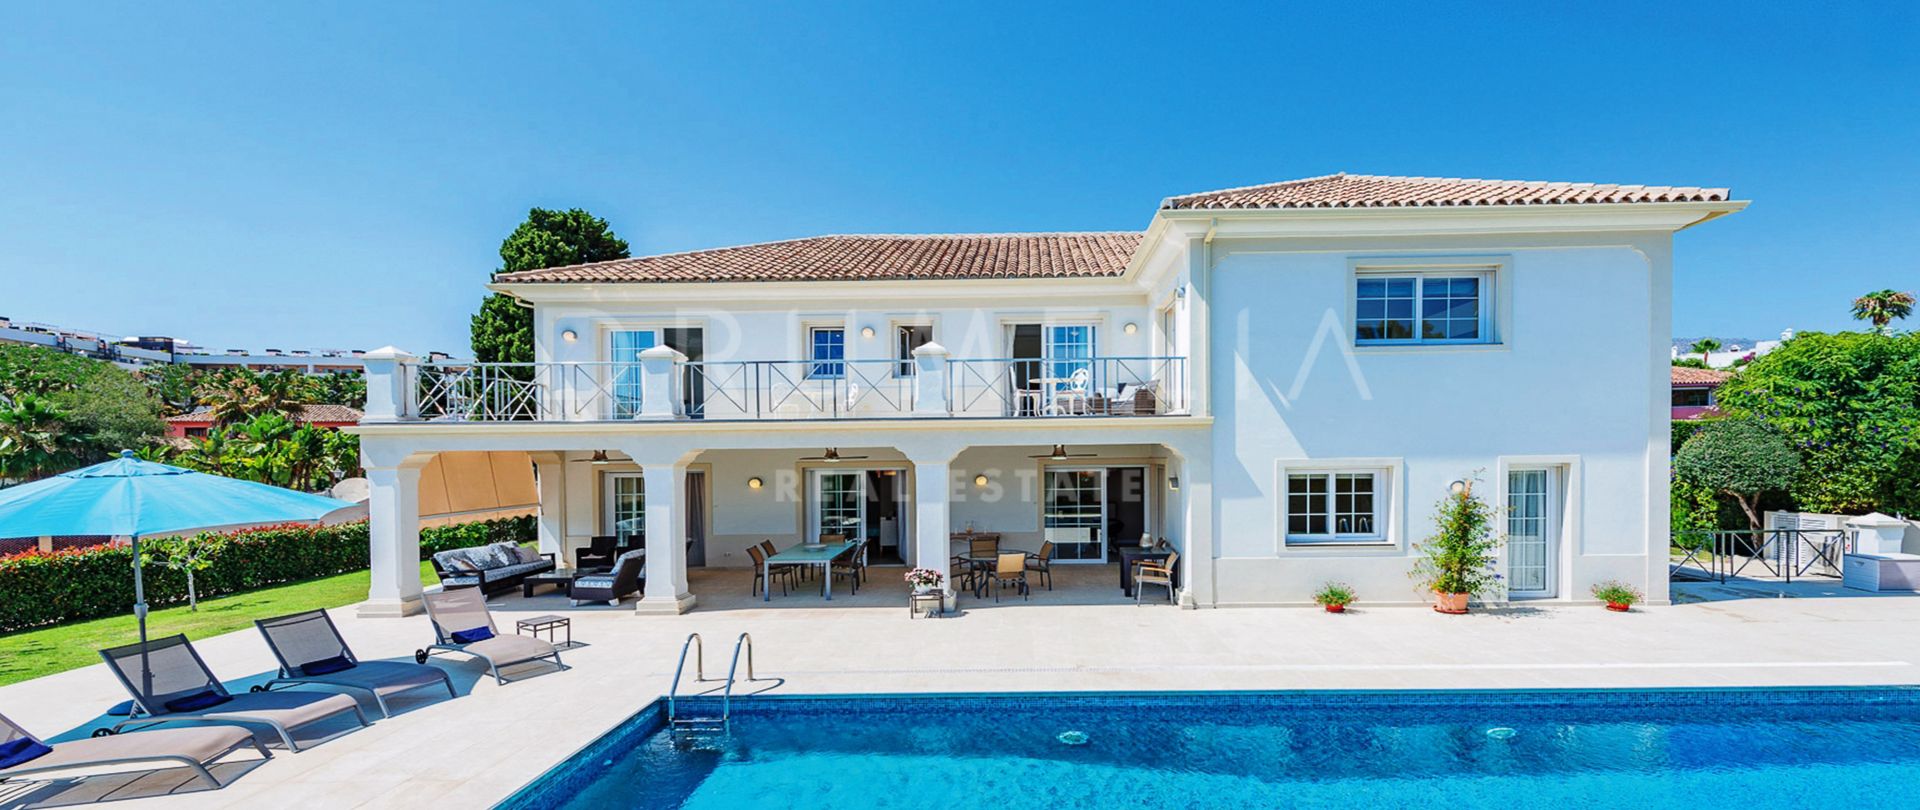 Villa méditerranéenne classique et moderne haut de gamme à Casablanca, Golden Mile de Marbella